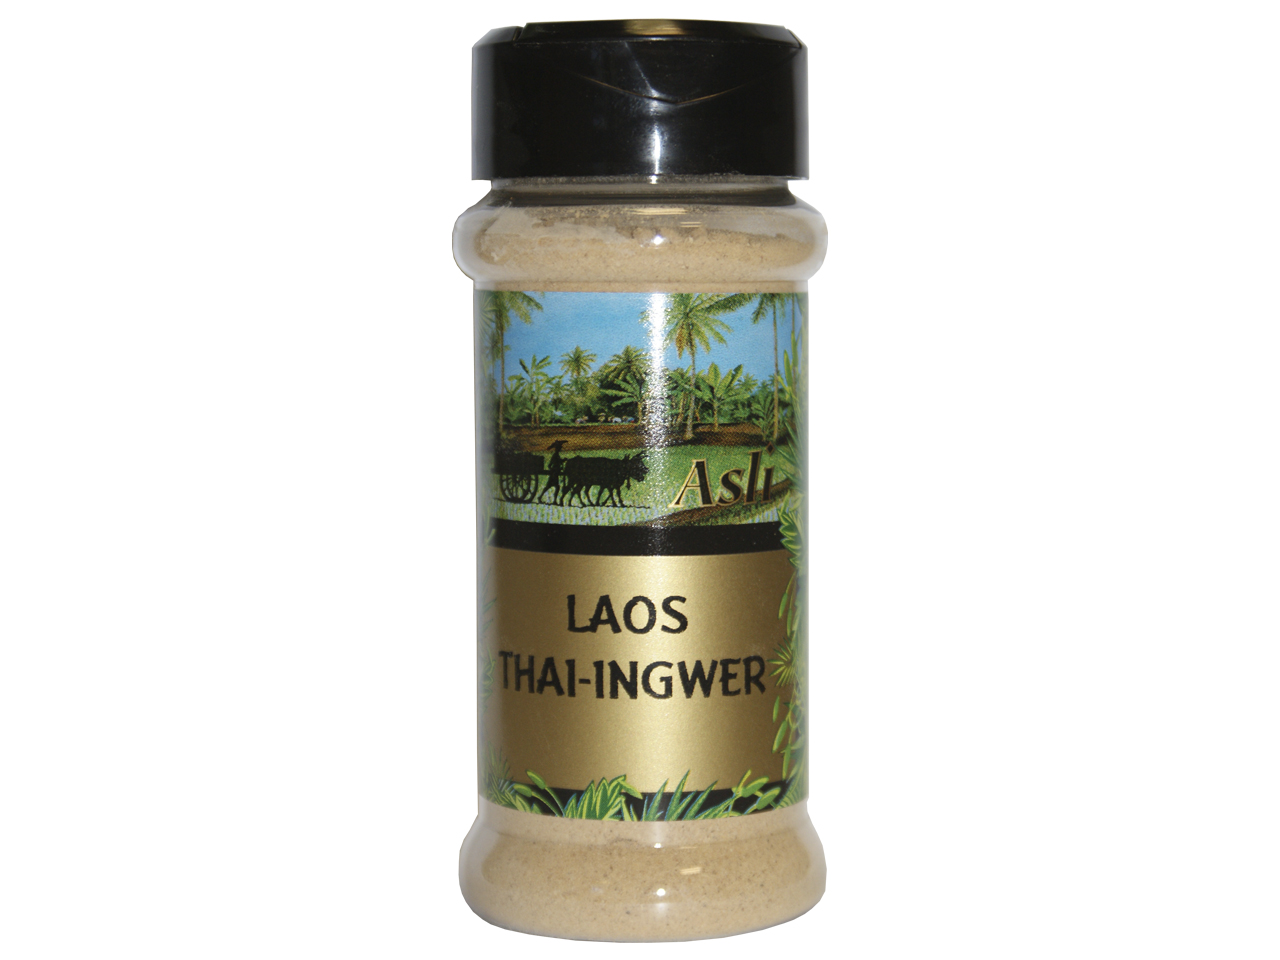 Laos Thai Ingwer 35g /Asli – – Asia Food